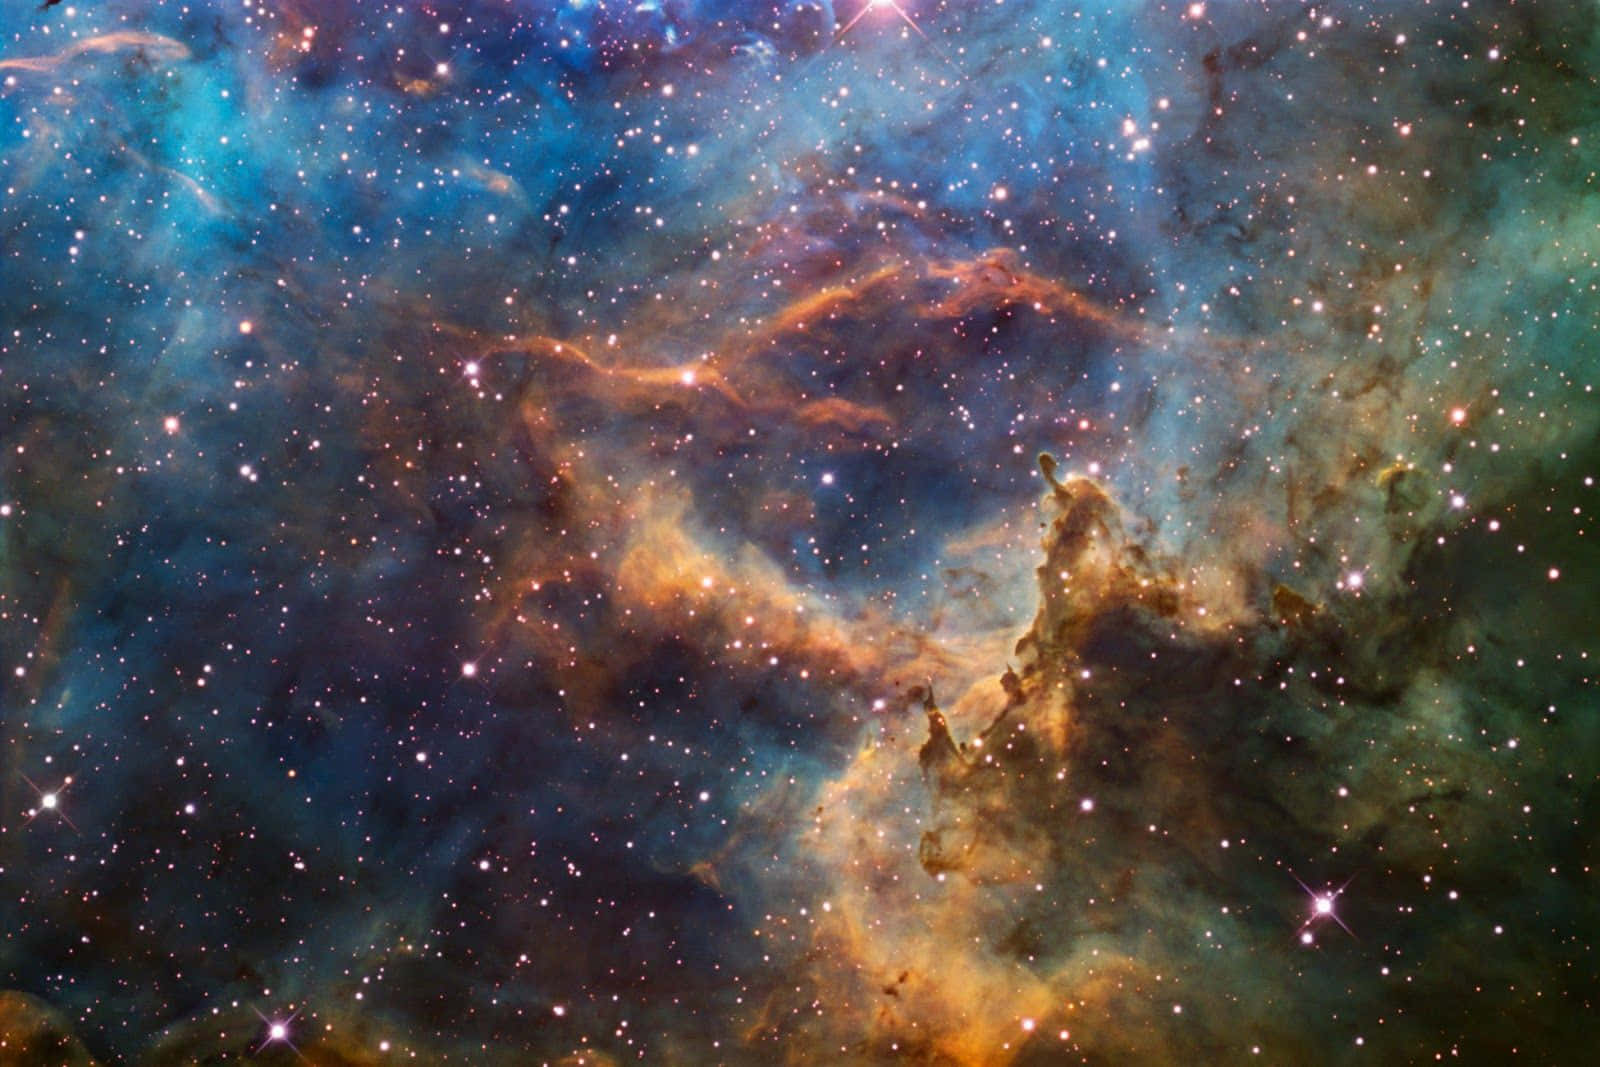 Unamisteriosa Energía Celestial Capturada En Una Impresionante Nebulosa.